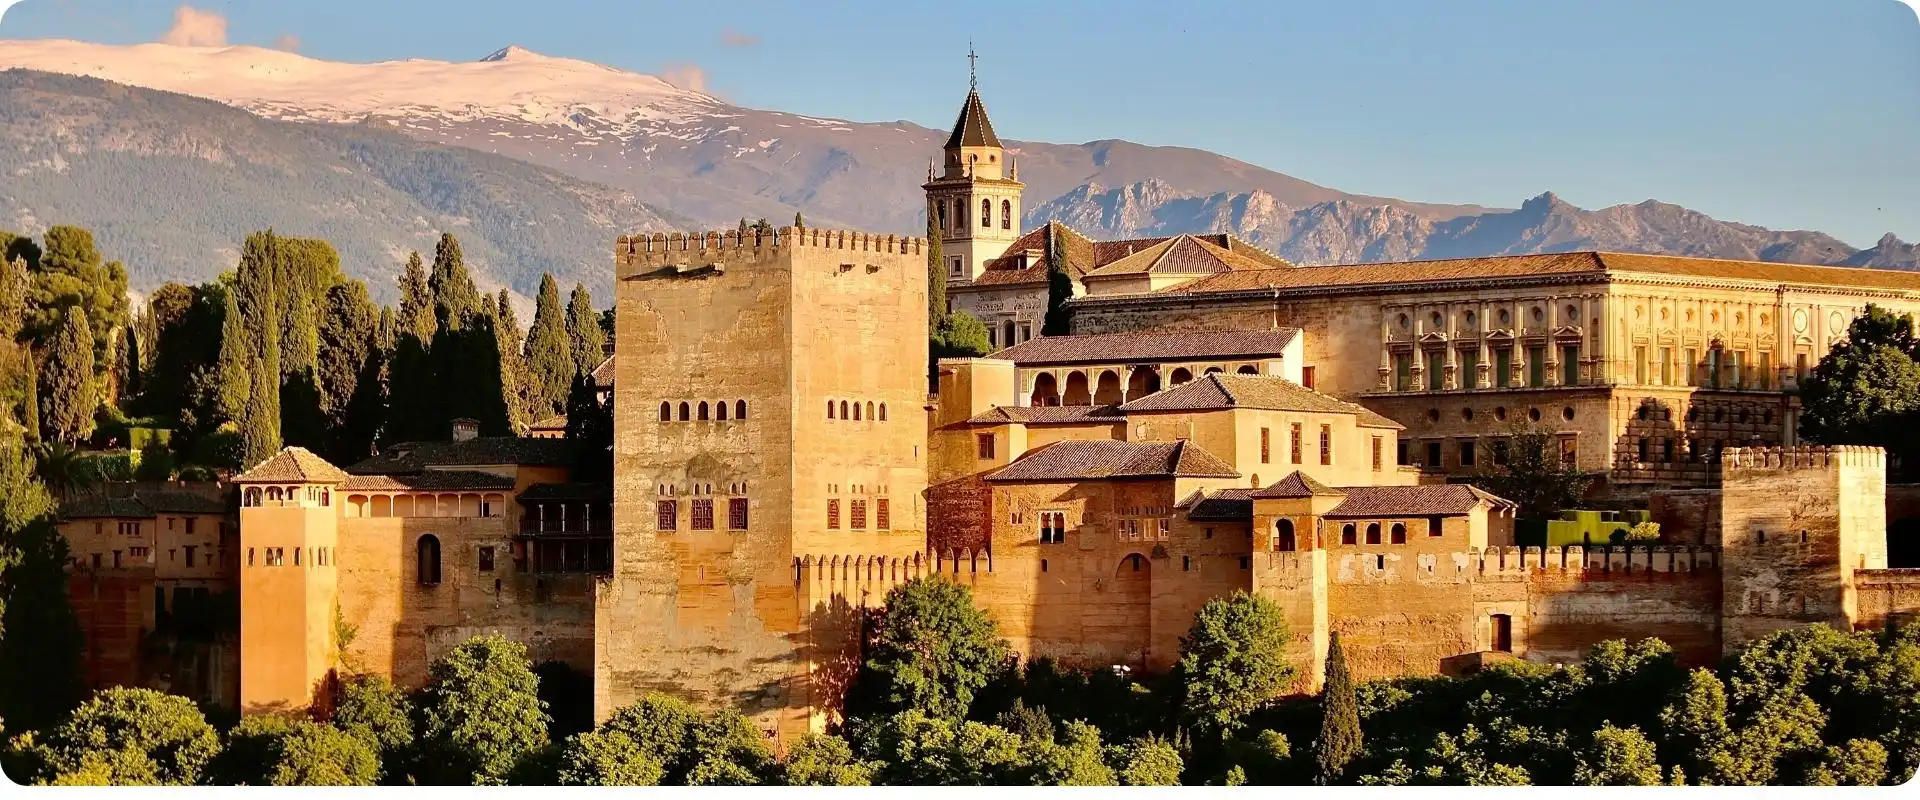 Alhambra charterrejser til spanien flyv fra hamborg.webp